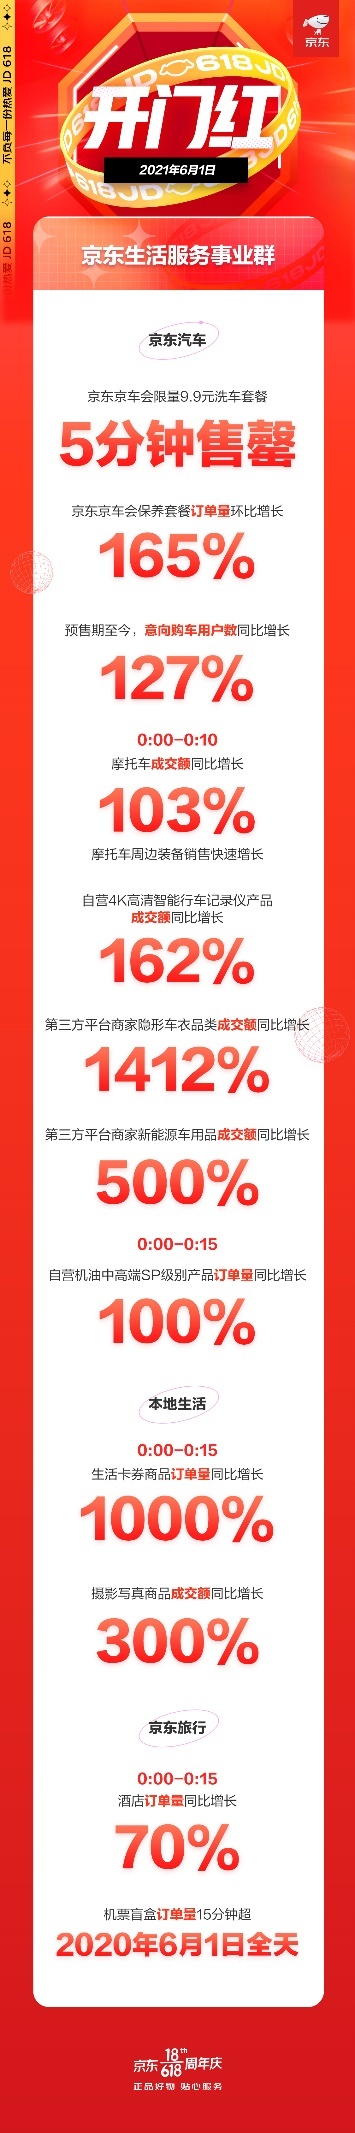 京东618糊口处事迎来开门红 京东京车会调养套餐预定量环比增长165%